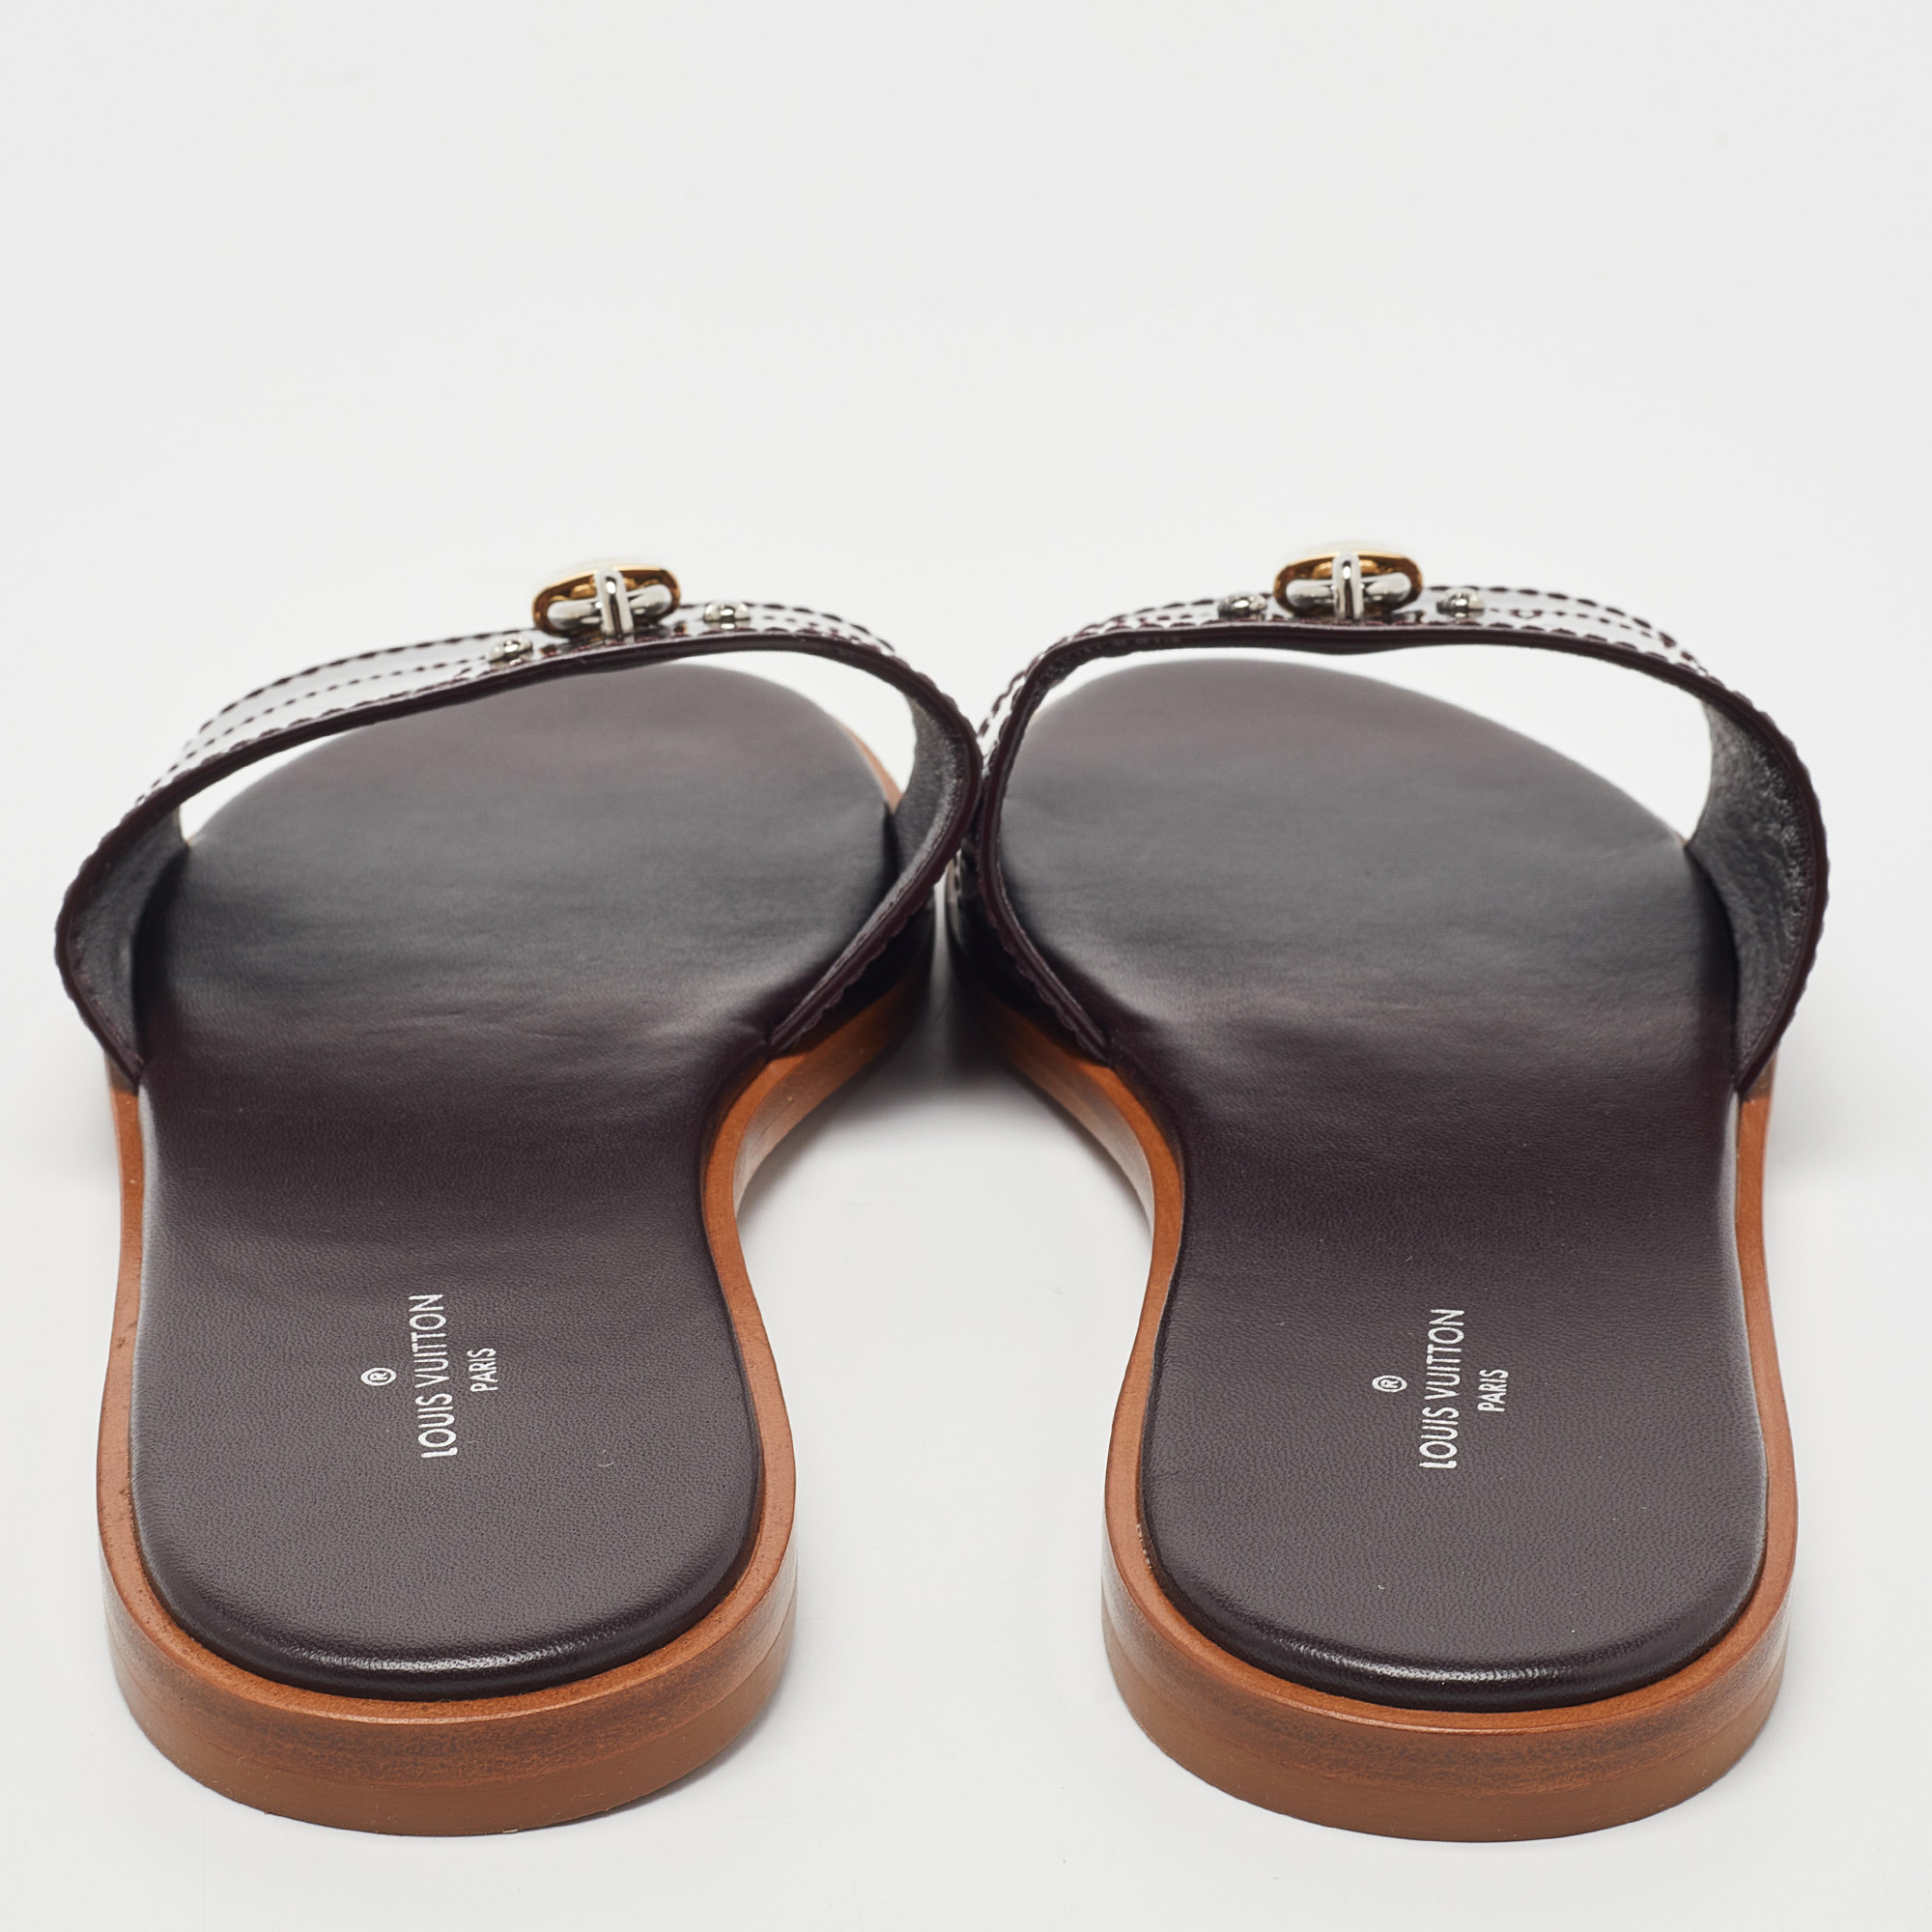 Louis Vuitton Amarante Patent Leather Lock It Flat  Sandals Size 38